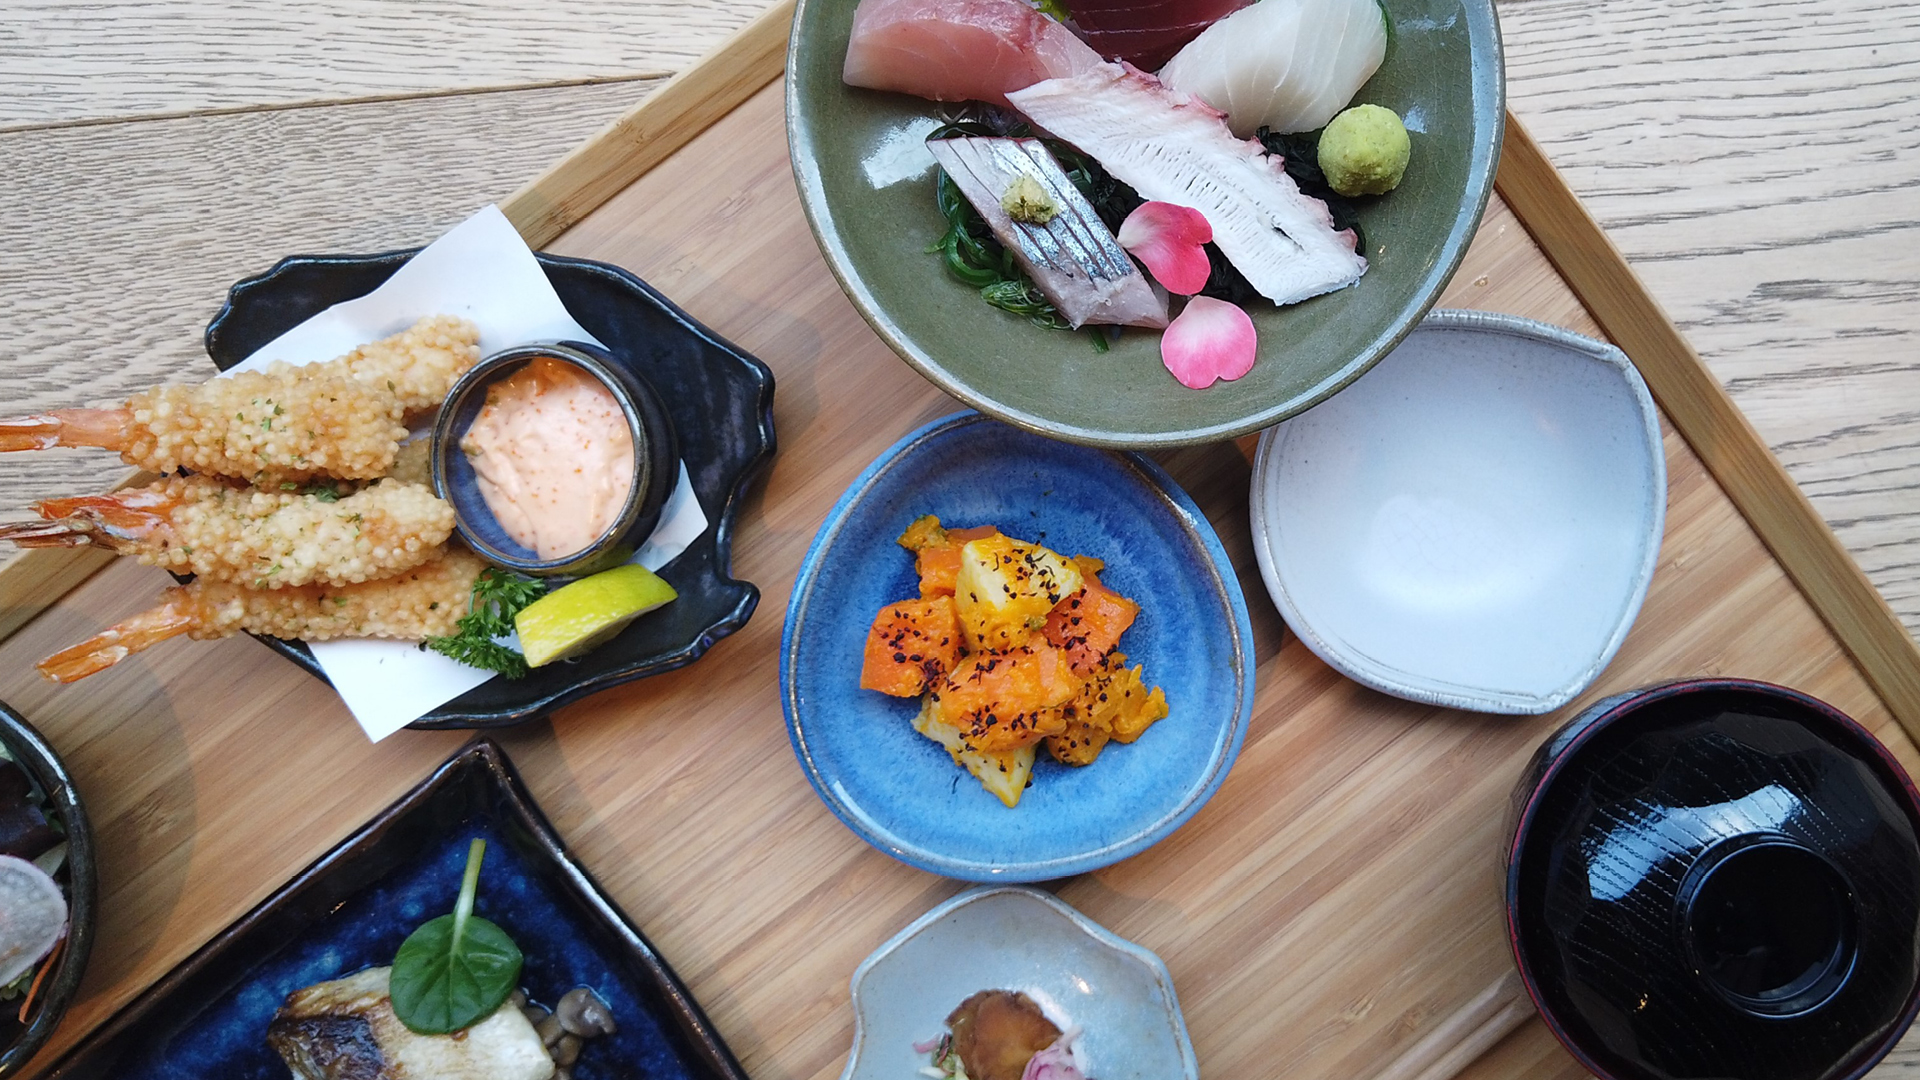 Bandeja de madeira com diversos recipientes coloridos de cerâmica com pratos japoneses, como camarão empanado, peixe, conservas, etc.